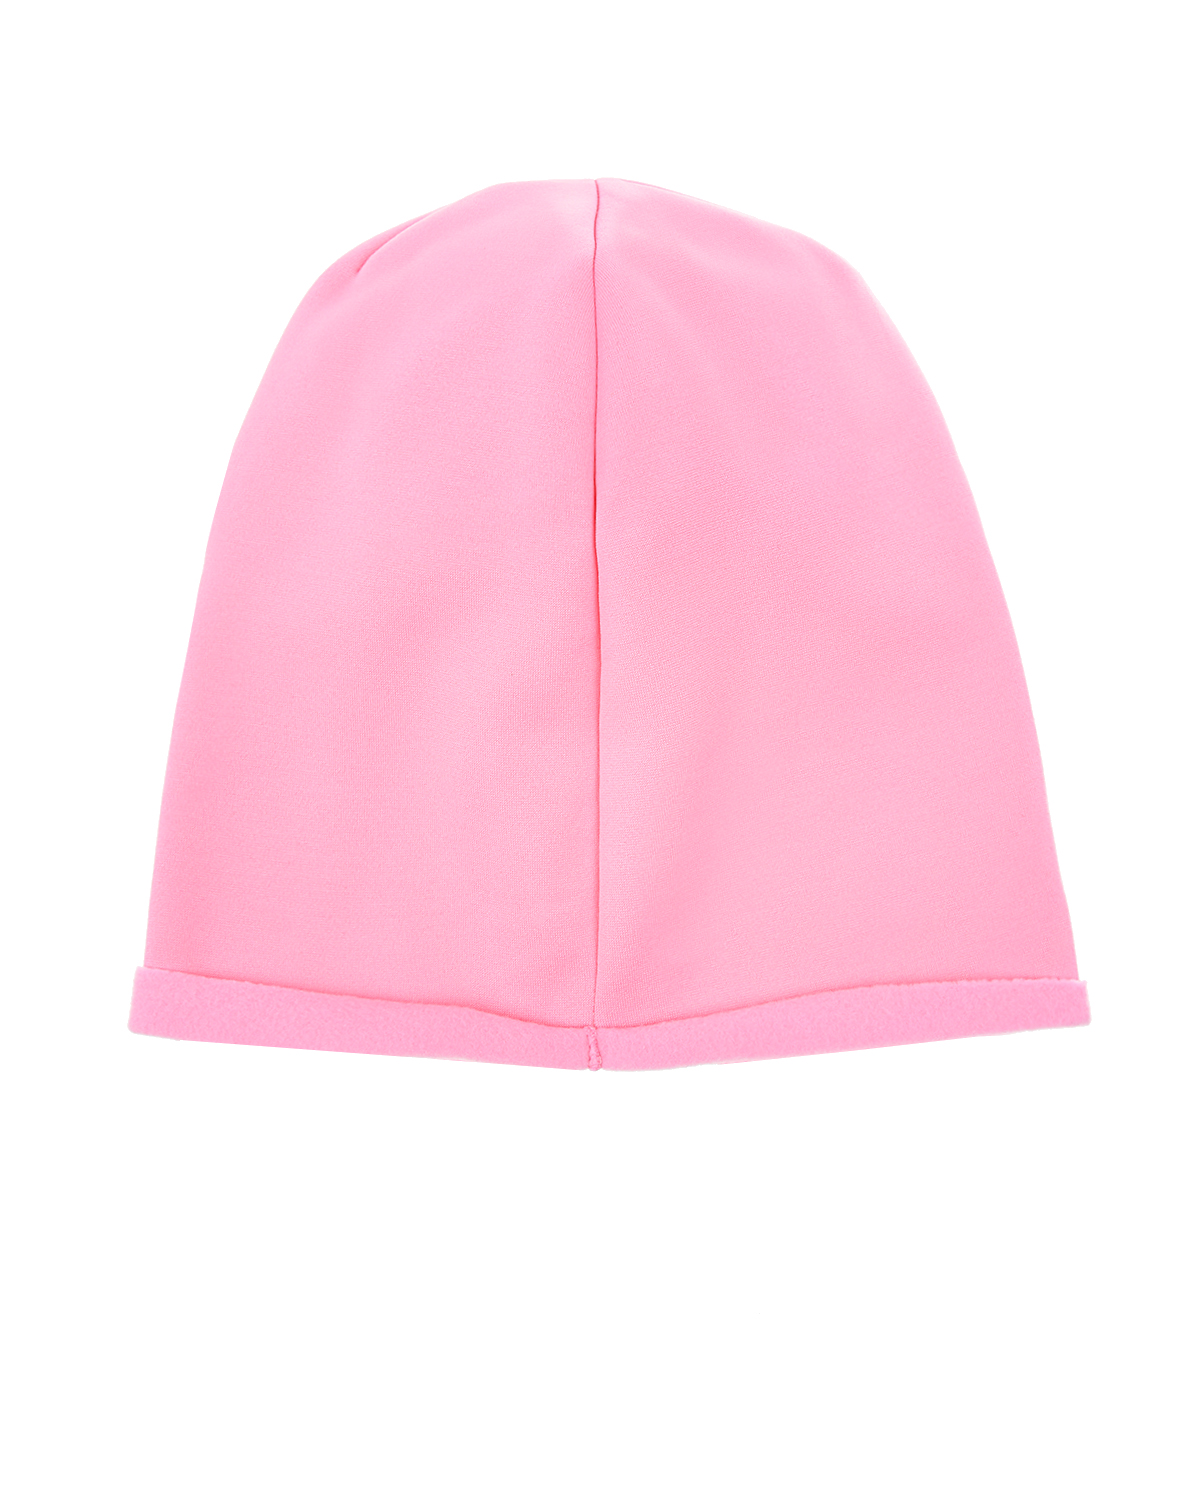 Розовая шапка из трикотажа с надписью из стразов "Fashion" Catya детская - фото 2